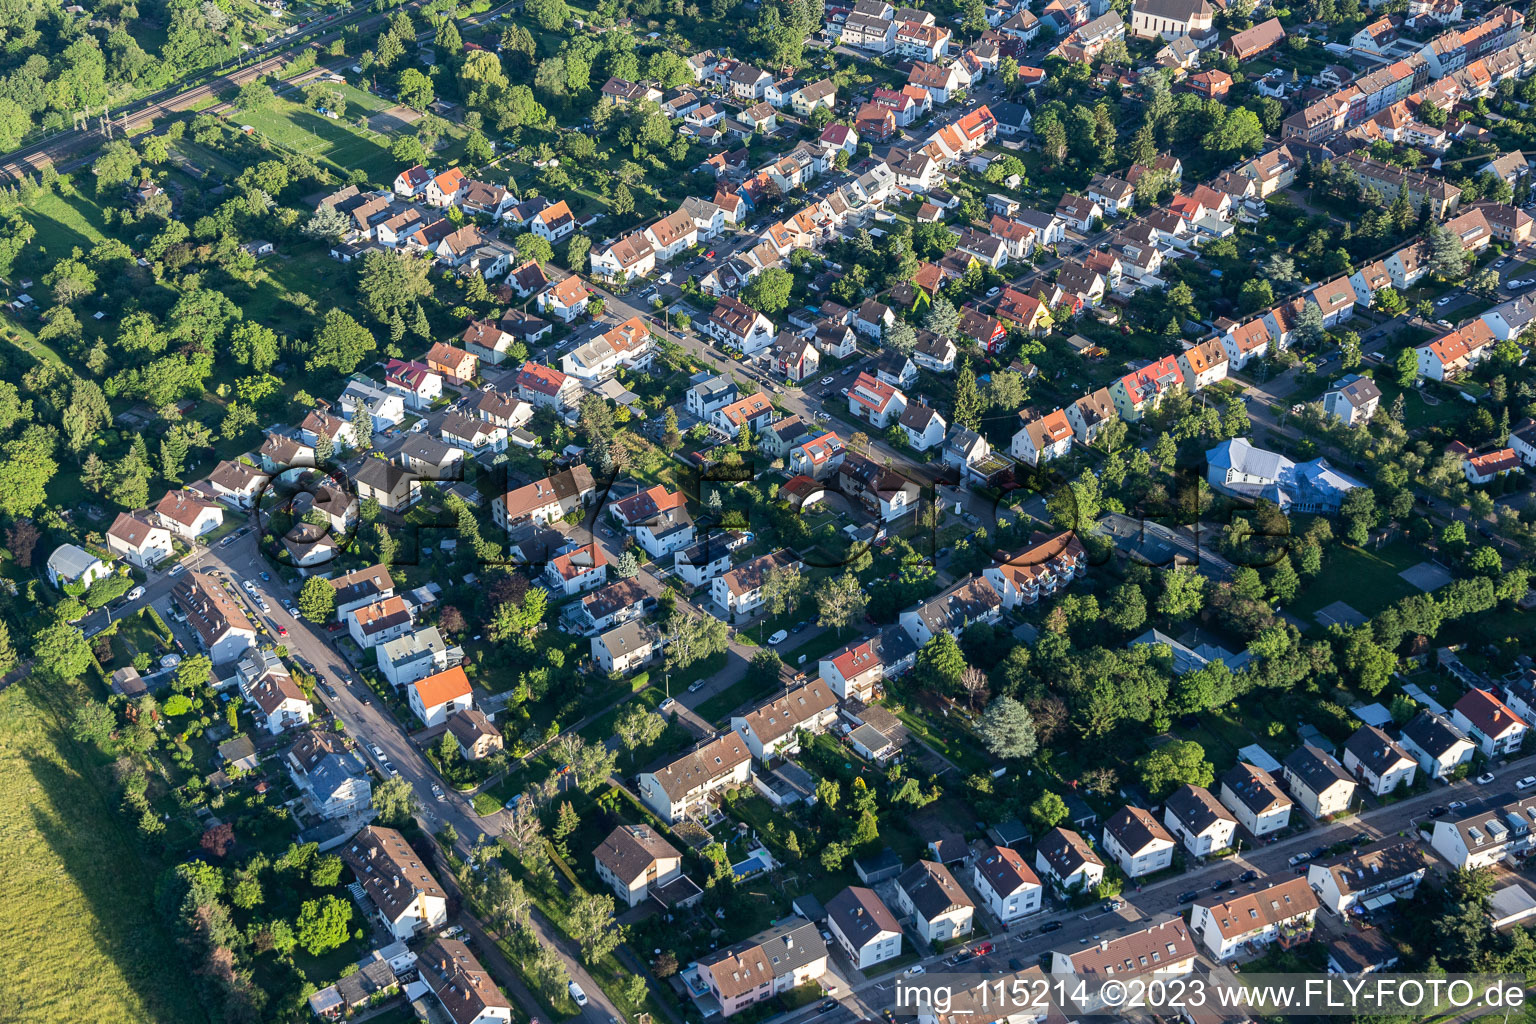 Luftbild von Ortsteil Rintheim in Karlsruhe im Bundesland Baden-Württemberg, Deutschland